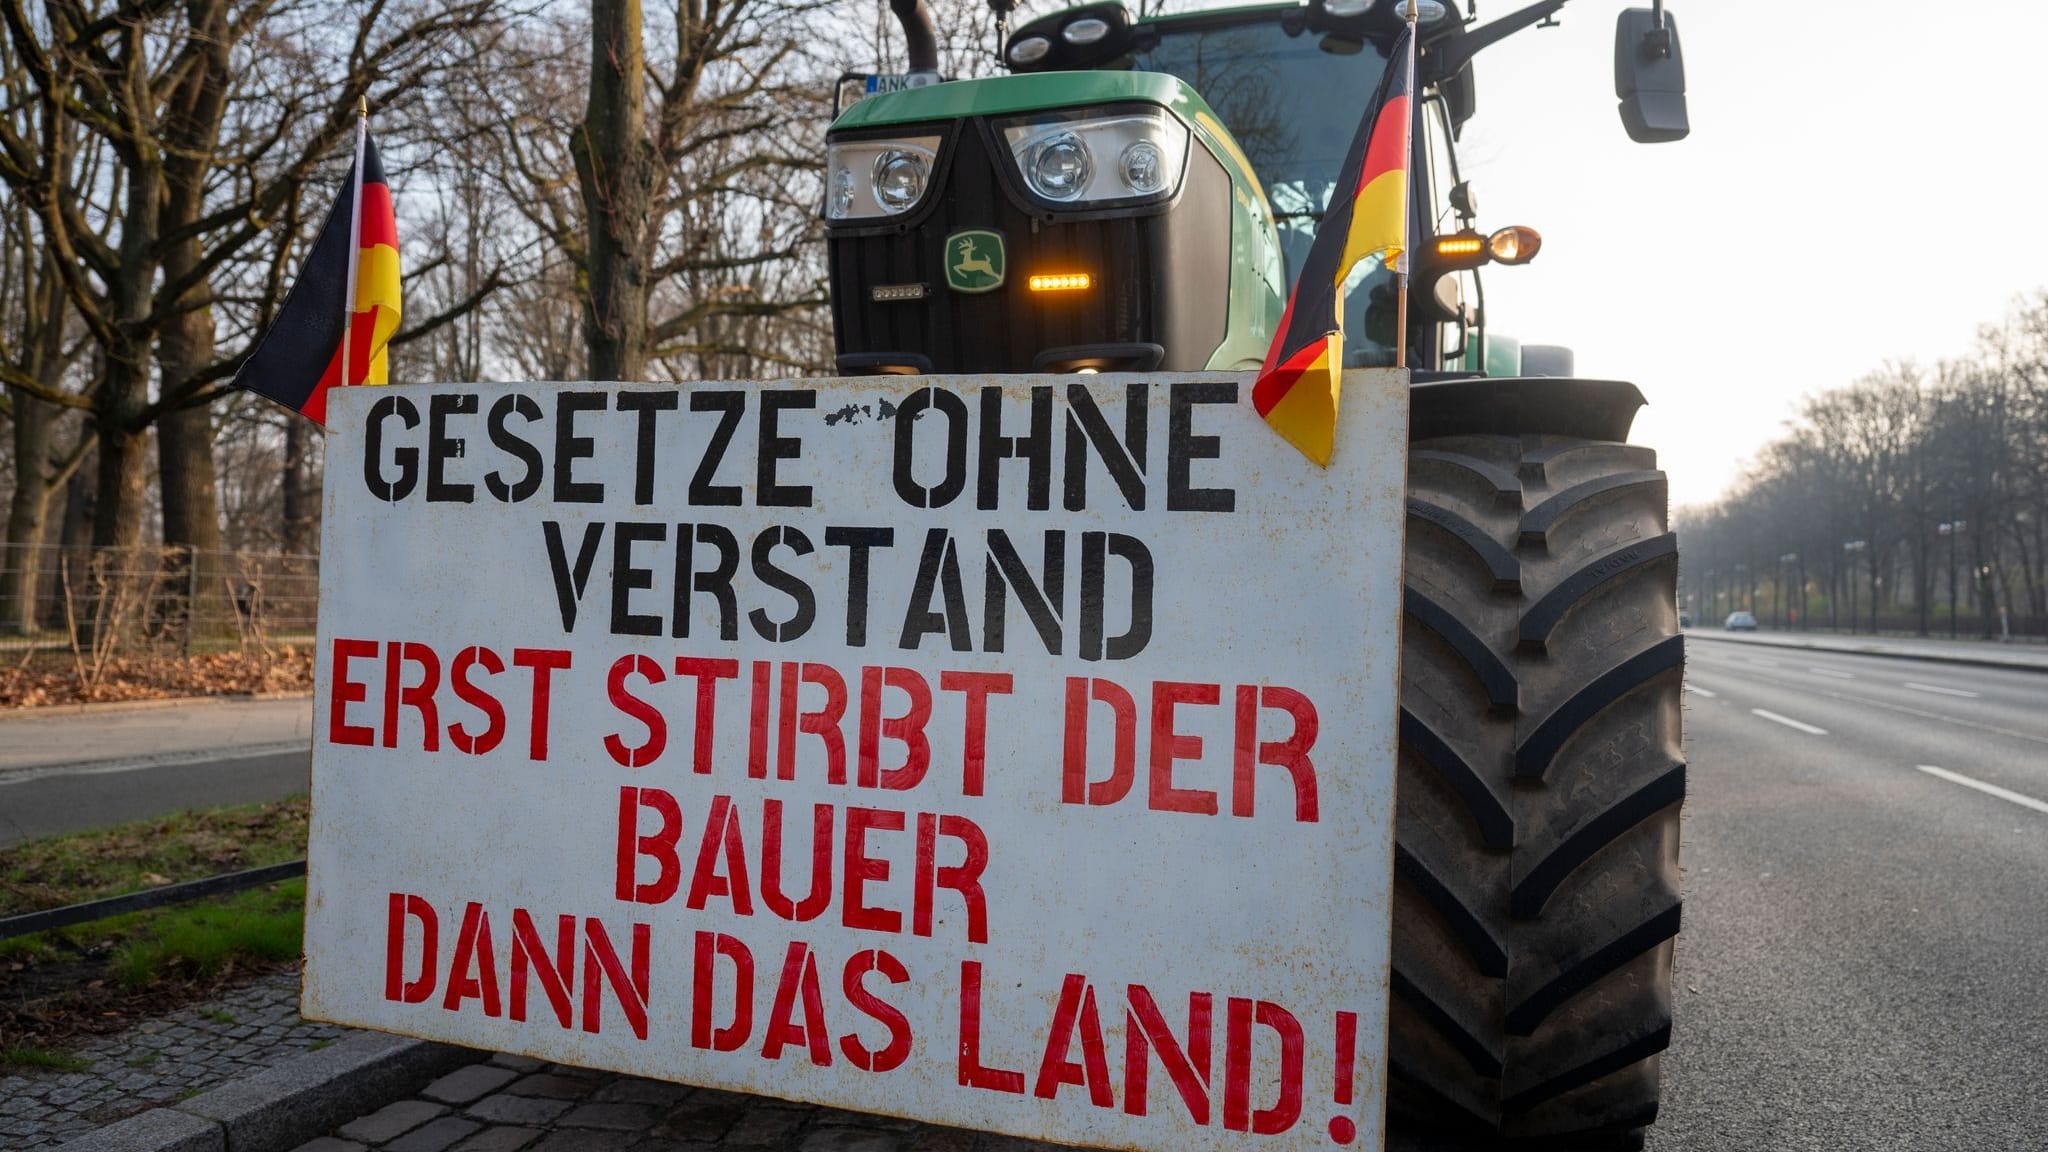 EU-Parlament will nach Bauernprotesten Umweltauflagen lockern